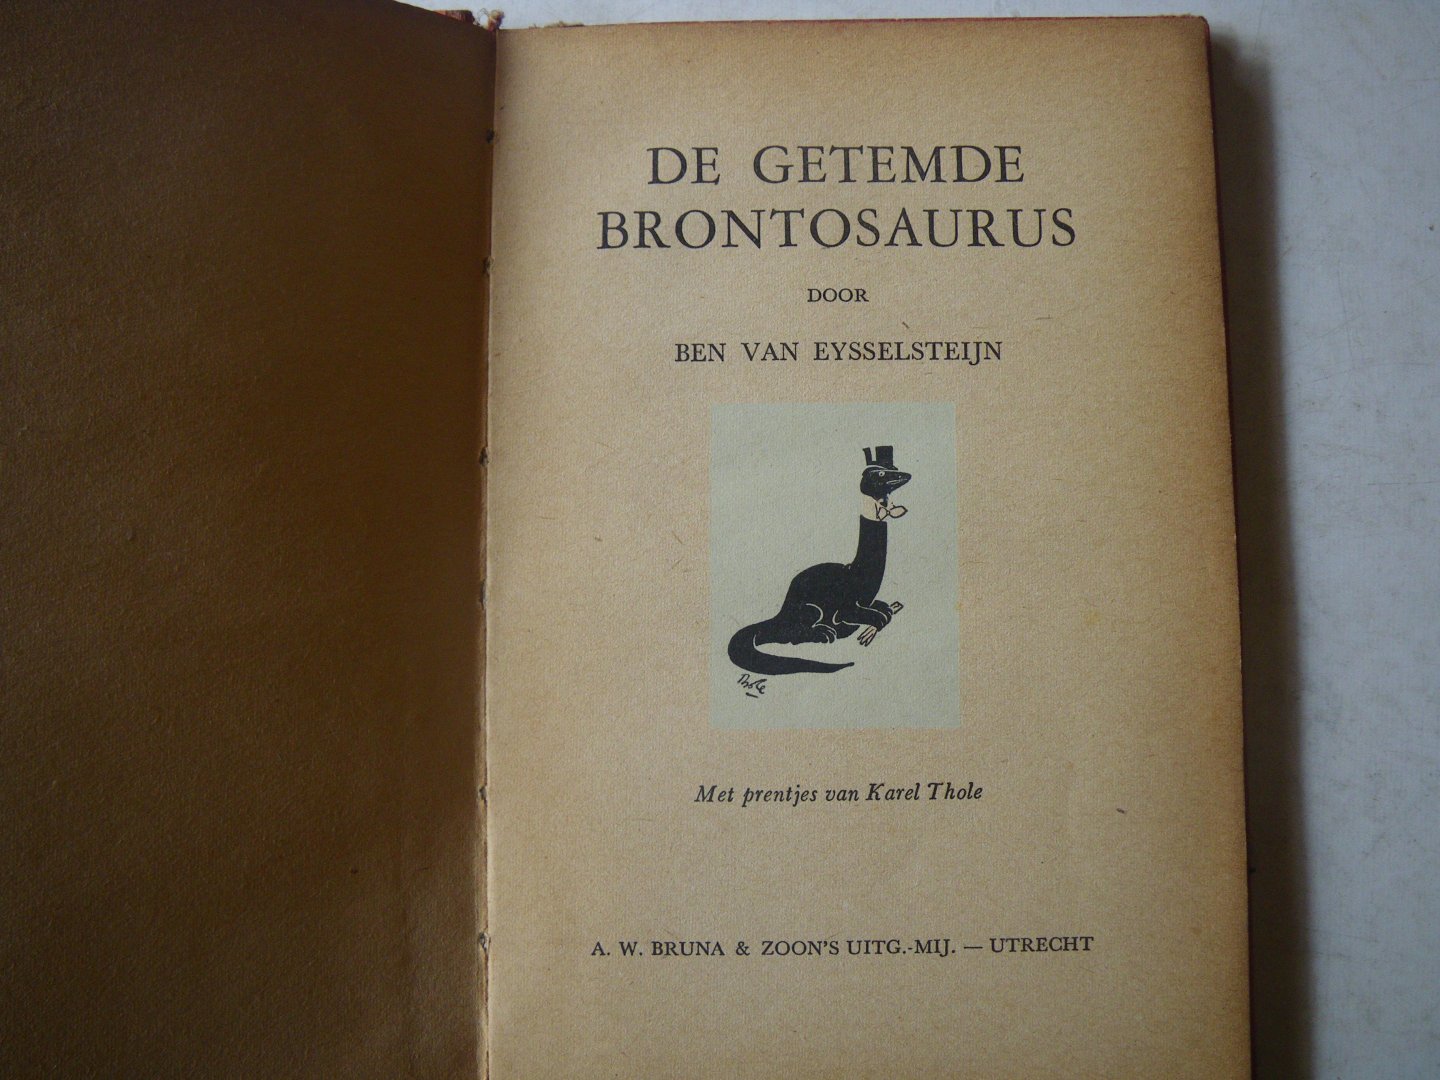 Eysselsteijn, Ben van - De getemde brontosaurus. (Prentjes van Karel Thole)